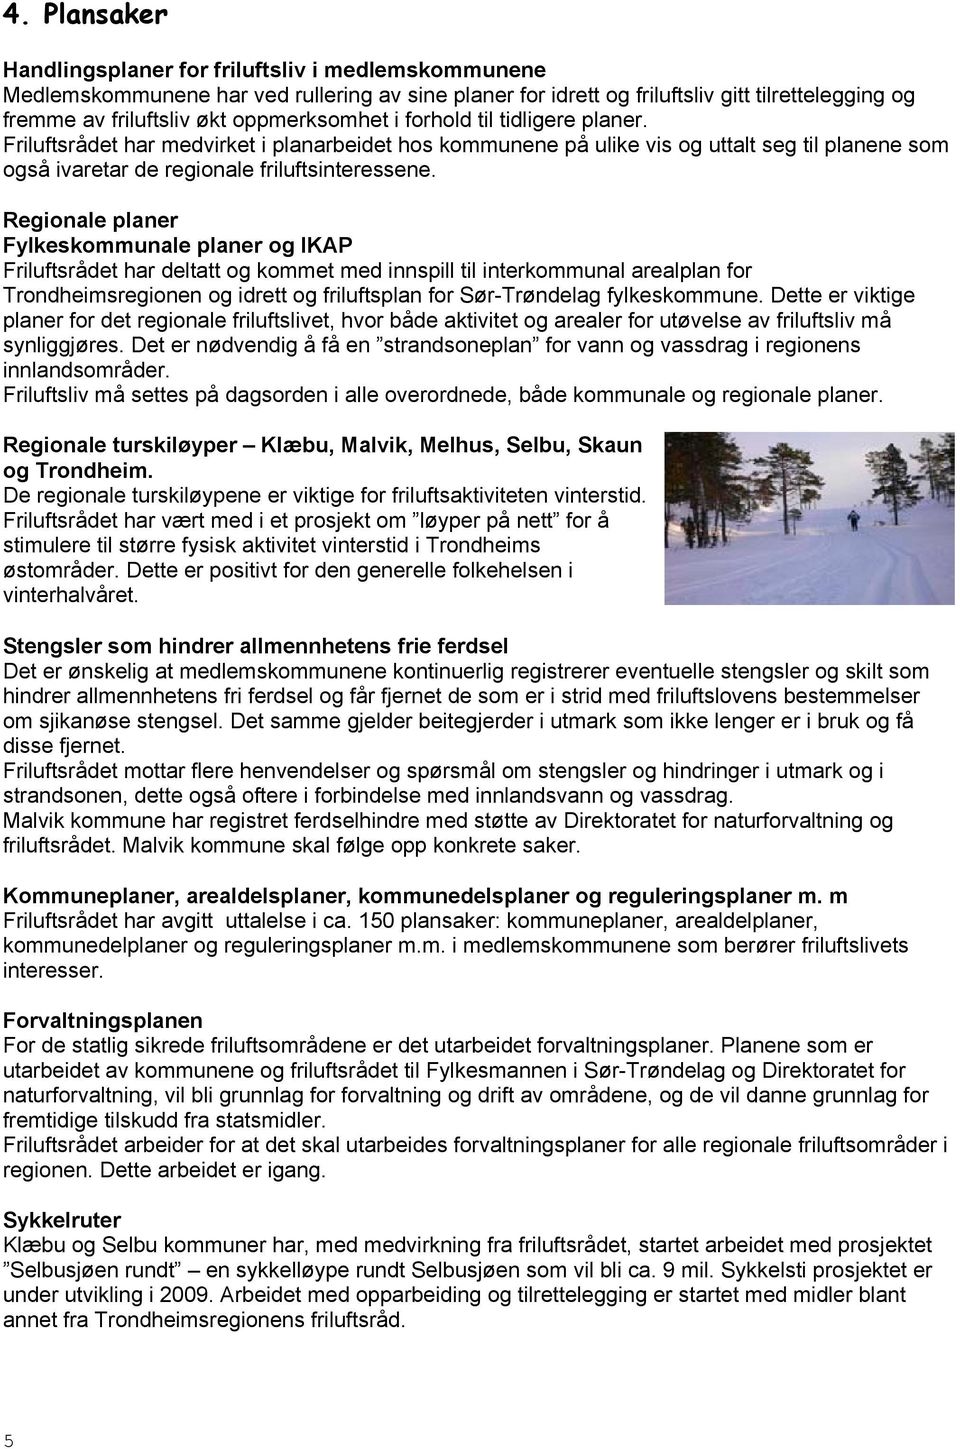 Regionale planer Fylkeskommunale planer og IKAP Friluftsrådet har deltatt og kommet med innspill til interkommunal arealplan for Trondheimsregionen og idrett og friluftsplan for Sør-Trøndelag